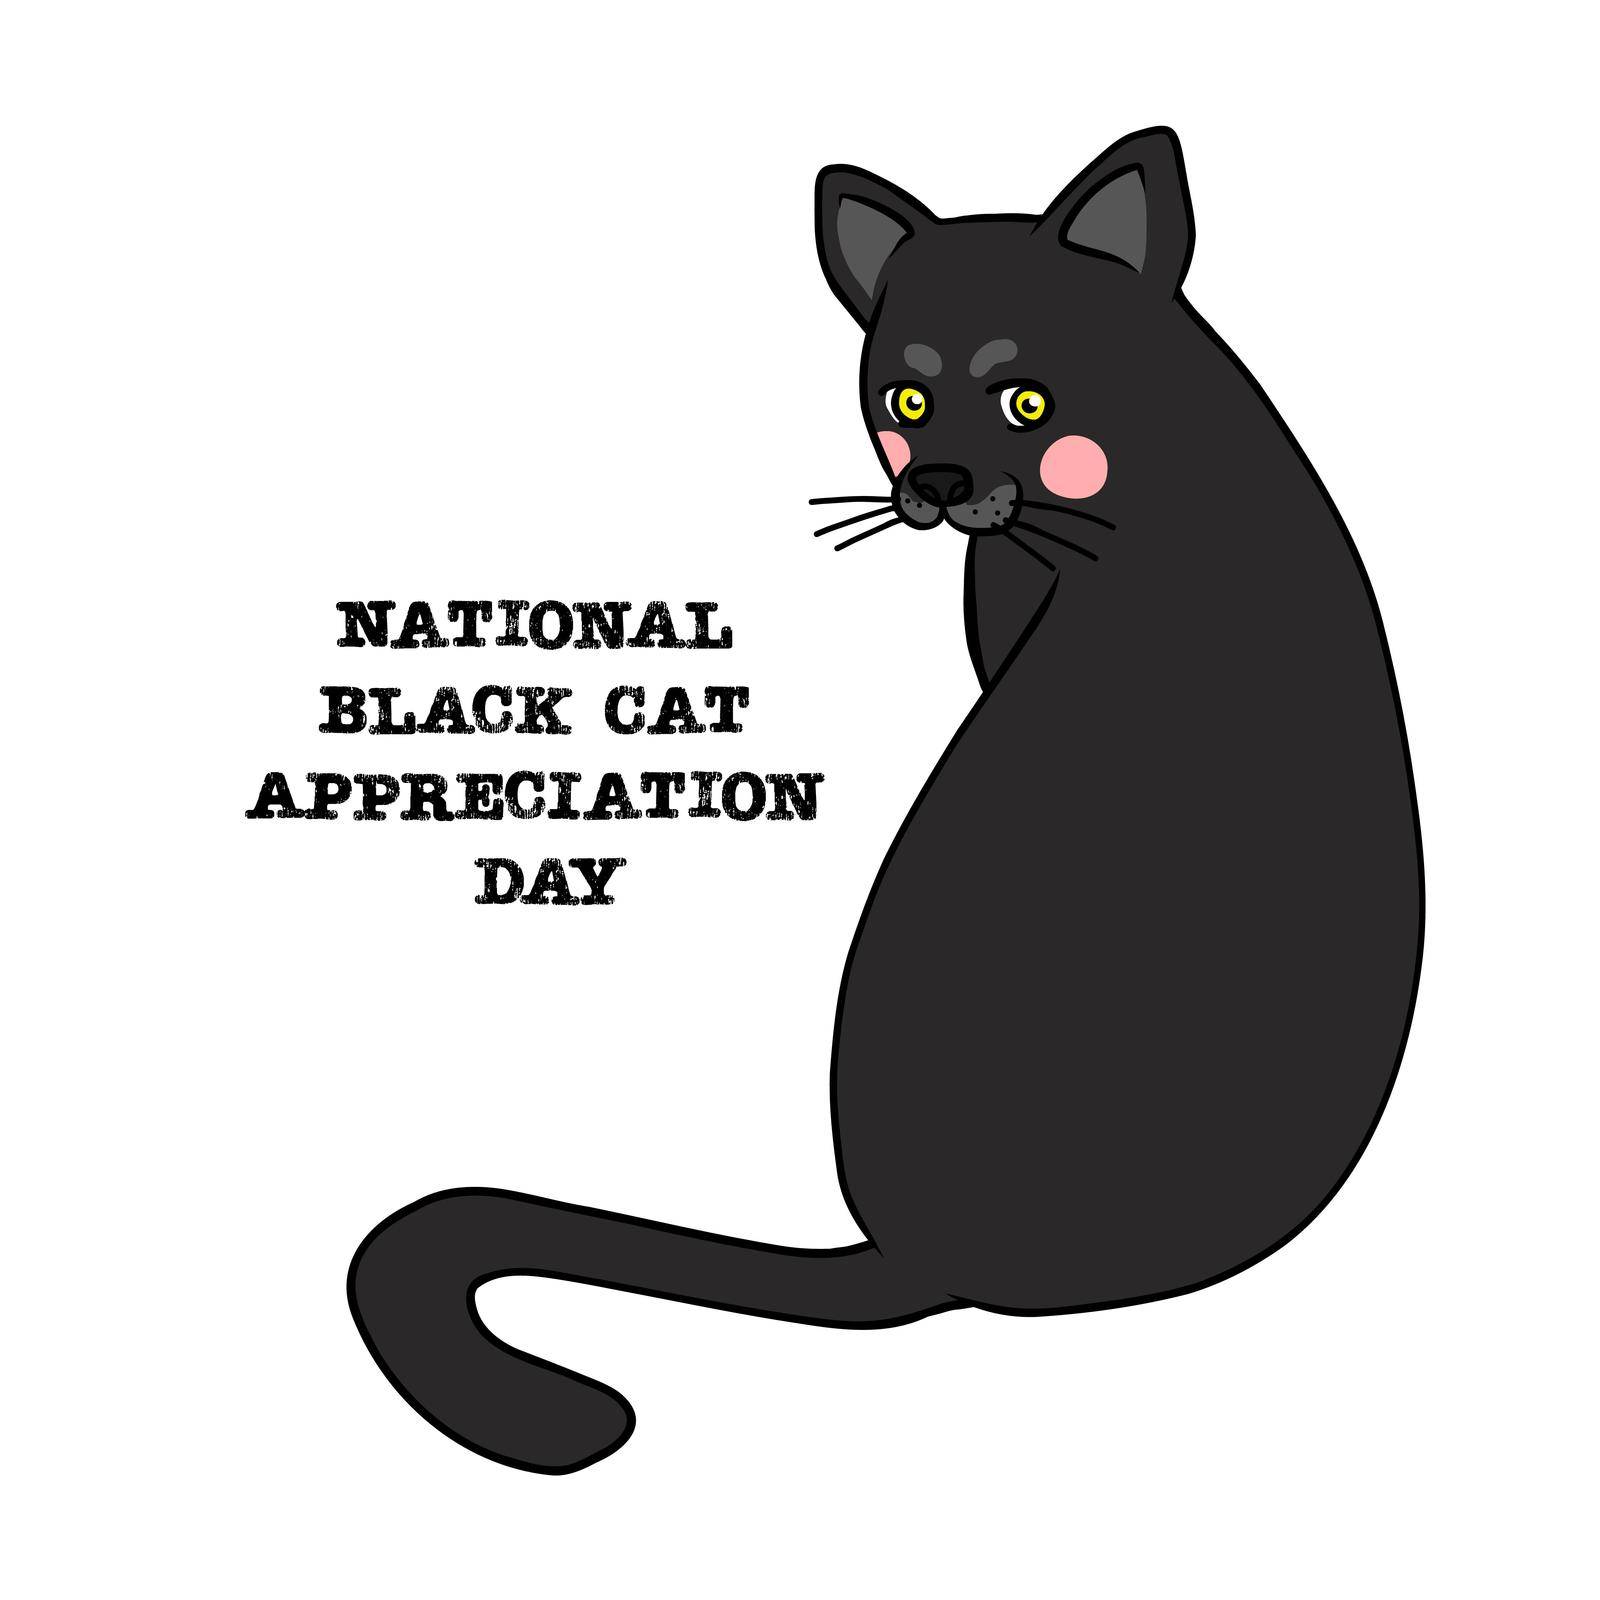 International black cat appreciation day cartoon vector illustration